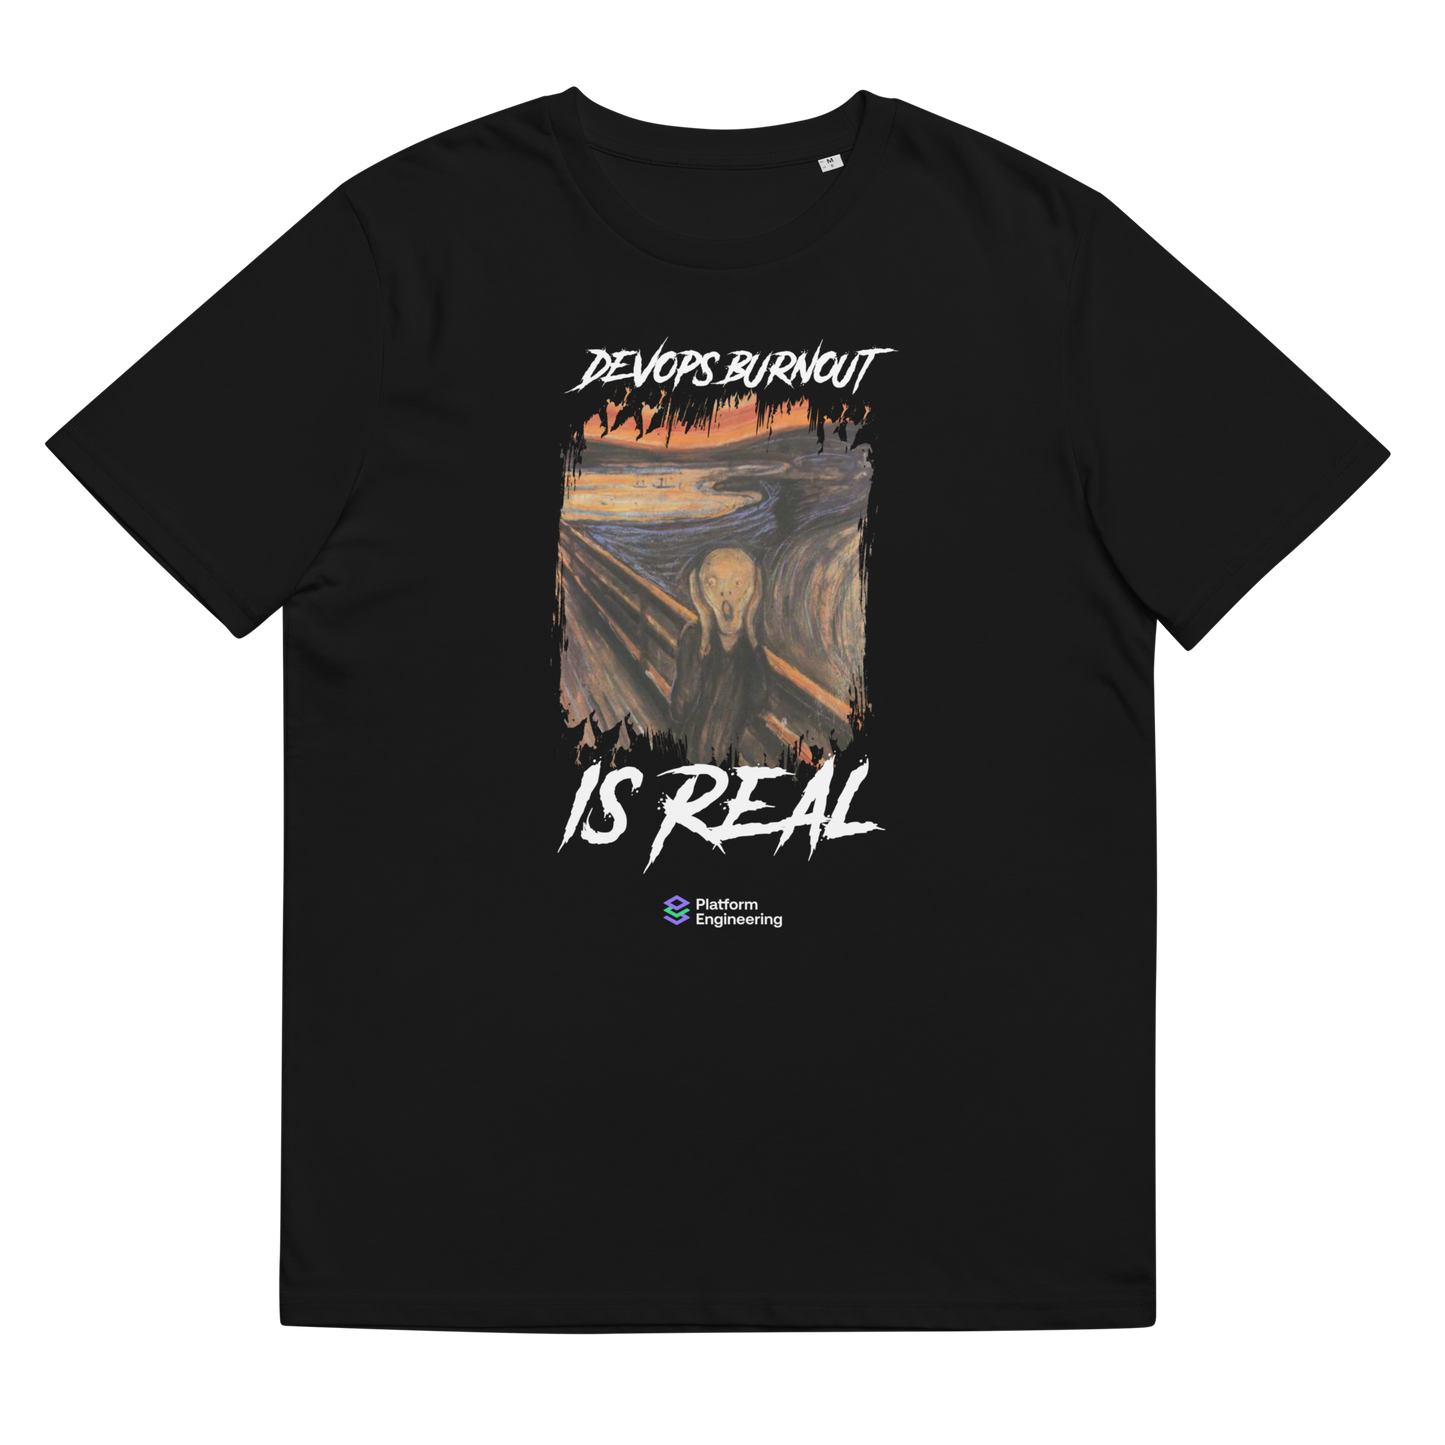 "DevOps Burnout" unisex t-shirt